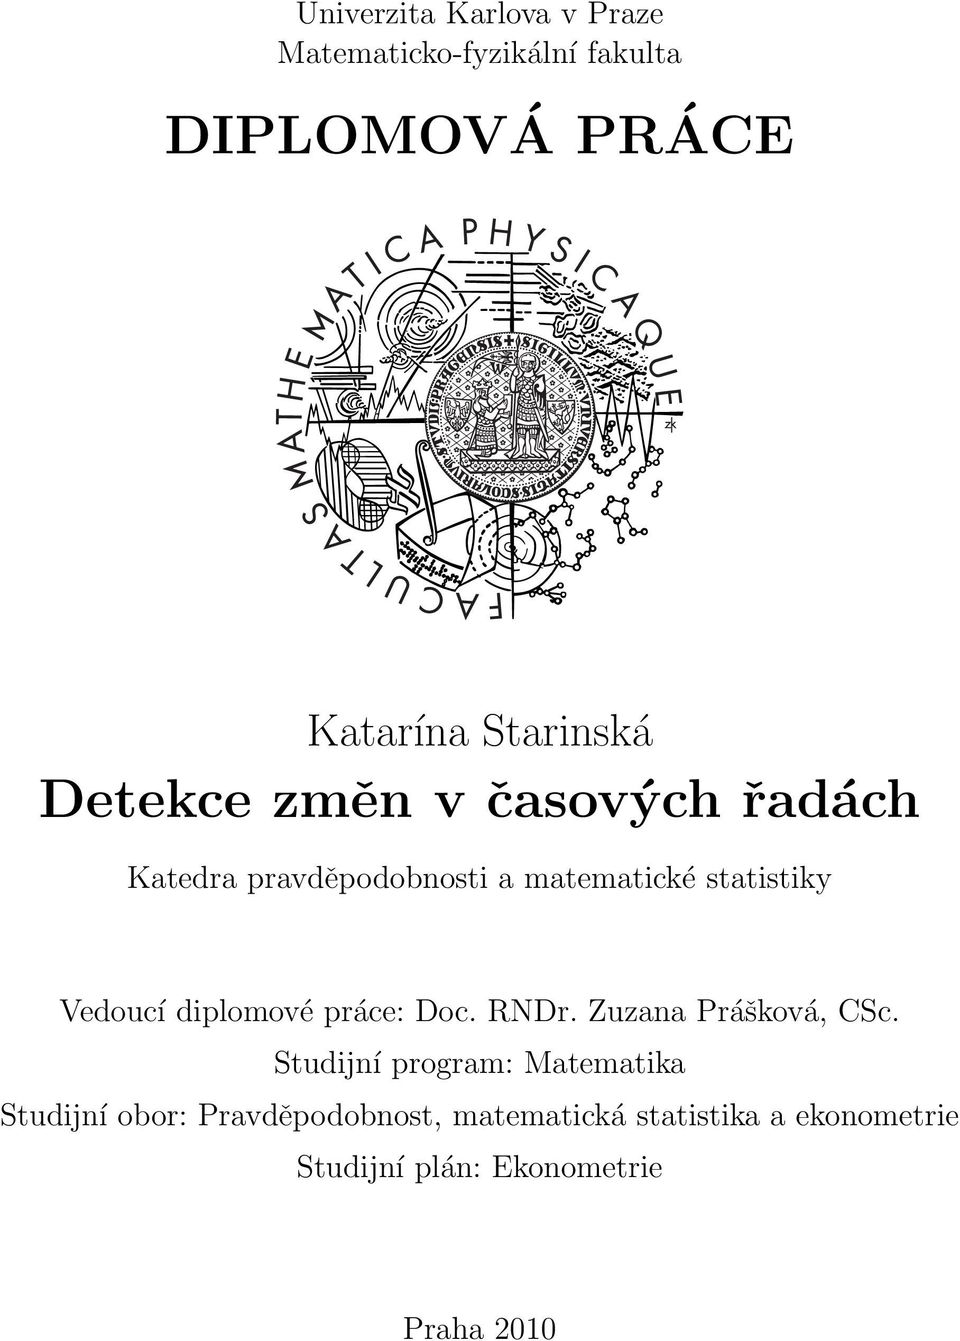 diplomové práce: Doc. RNDr. Zuzana Prášková, CSc.